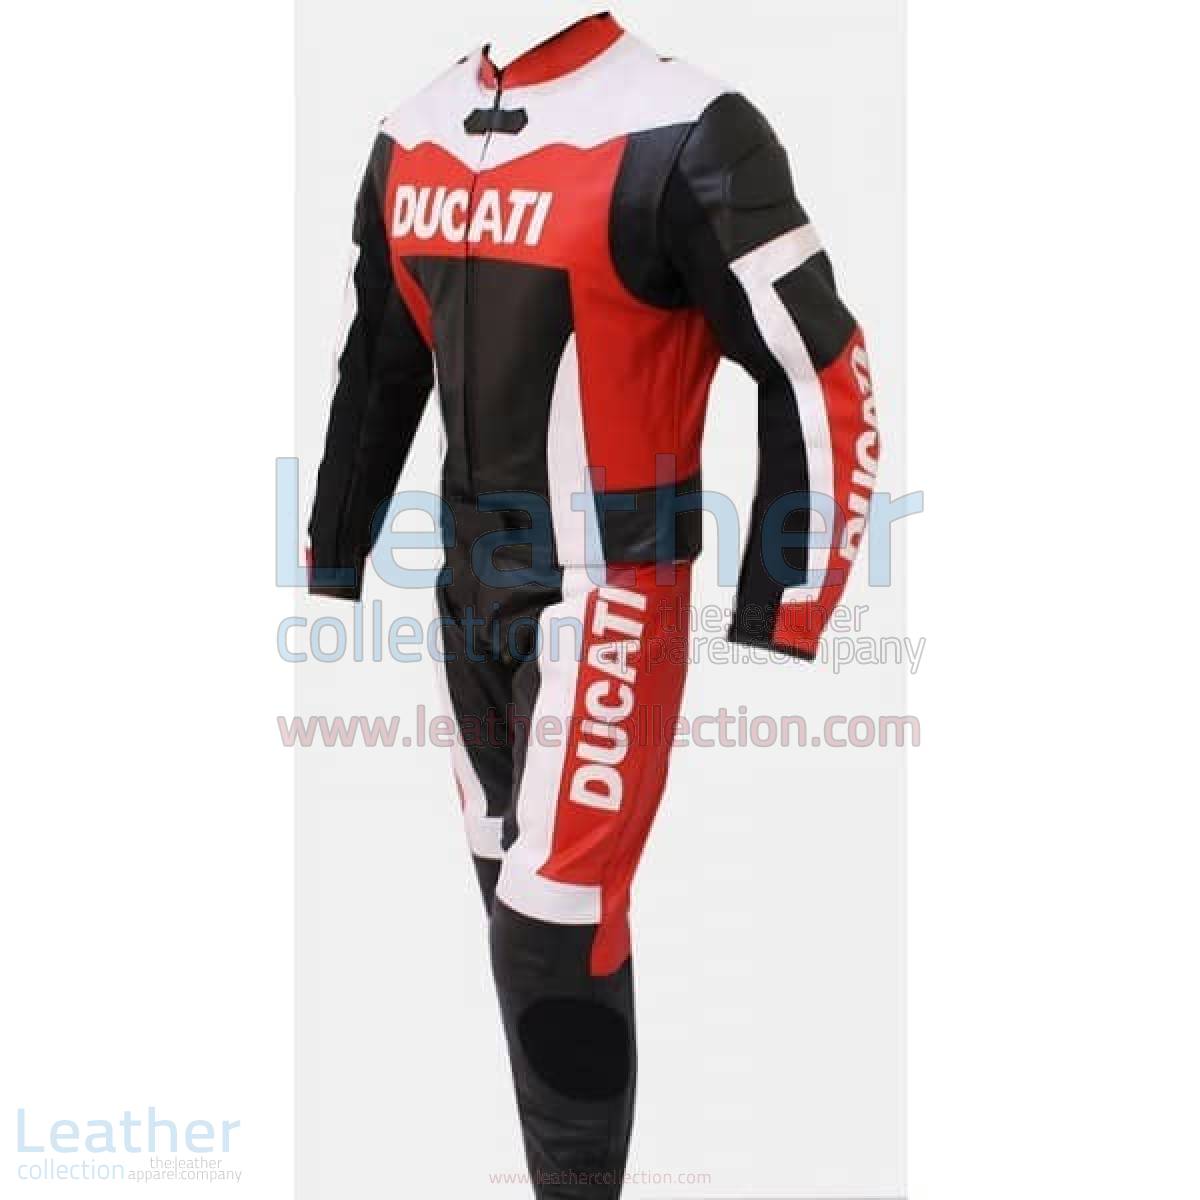 Ducati Motorbike Leather Suit – Ducati Suit